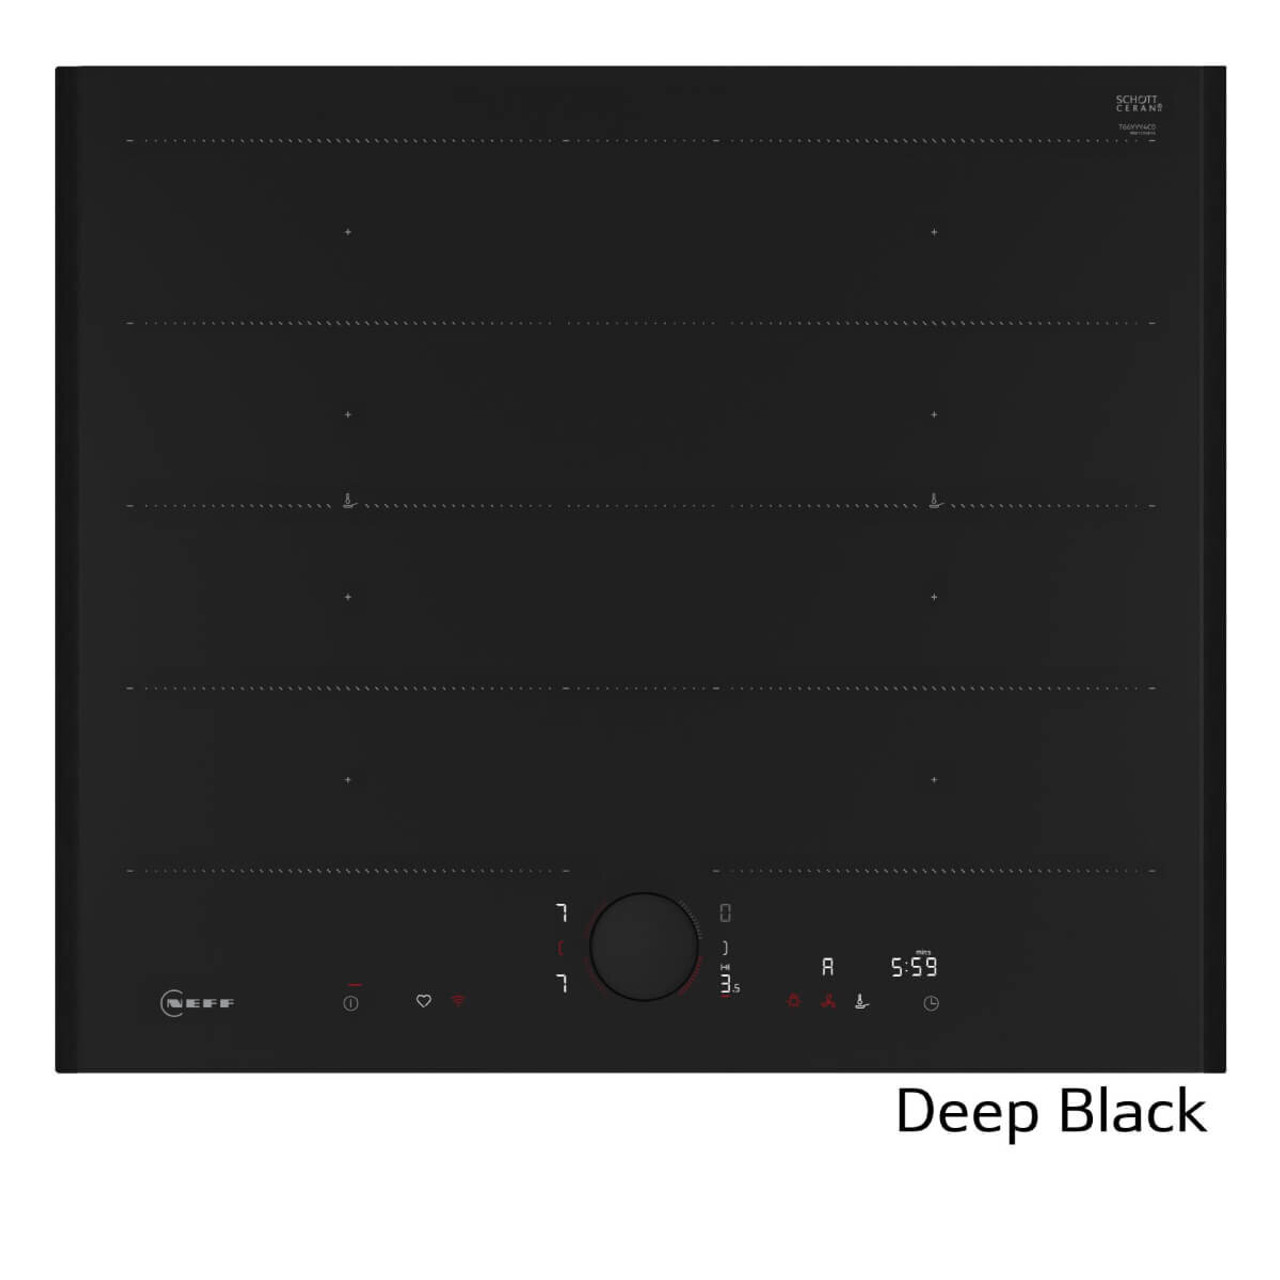 T66YYY4C0 - 60cm Flex Design Induction Cooktop - Deep Black 